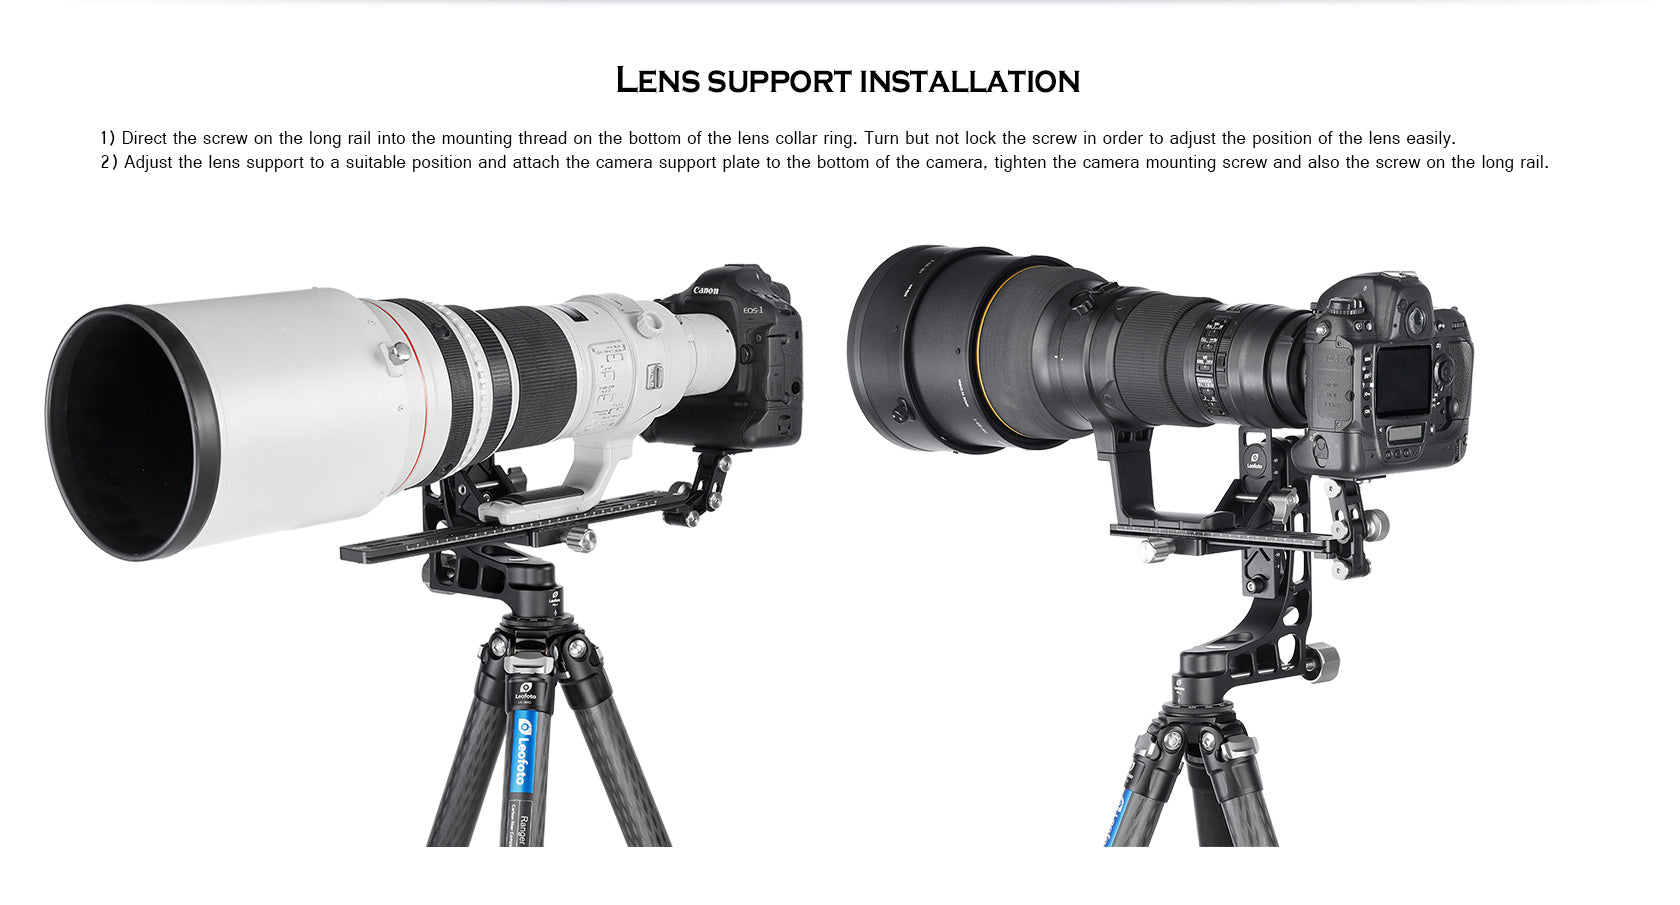 Leofoto VR-250 / VR-400 Long Tele Lens Support for Arca